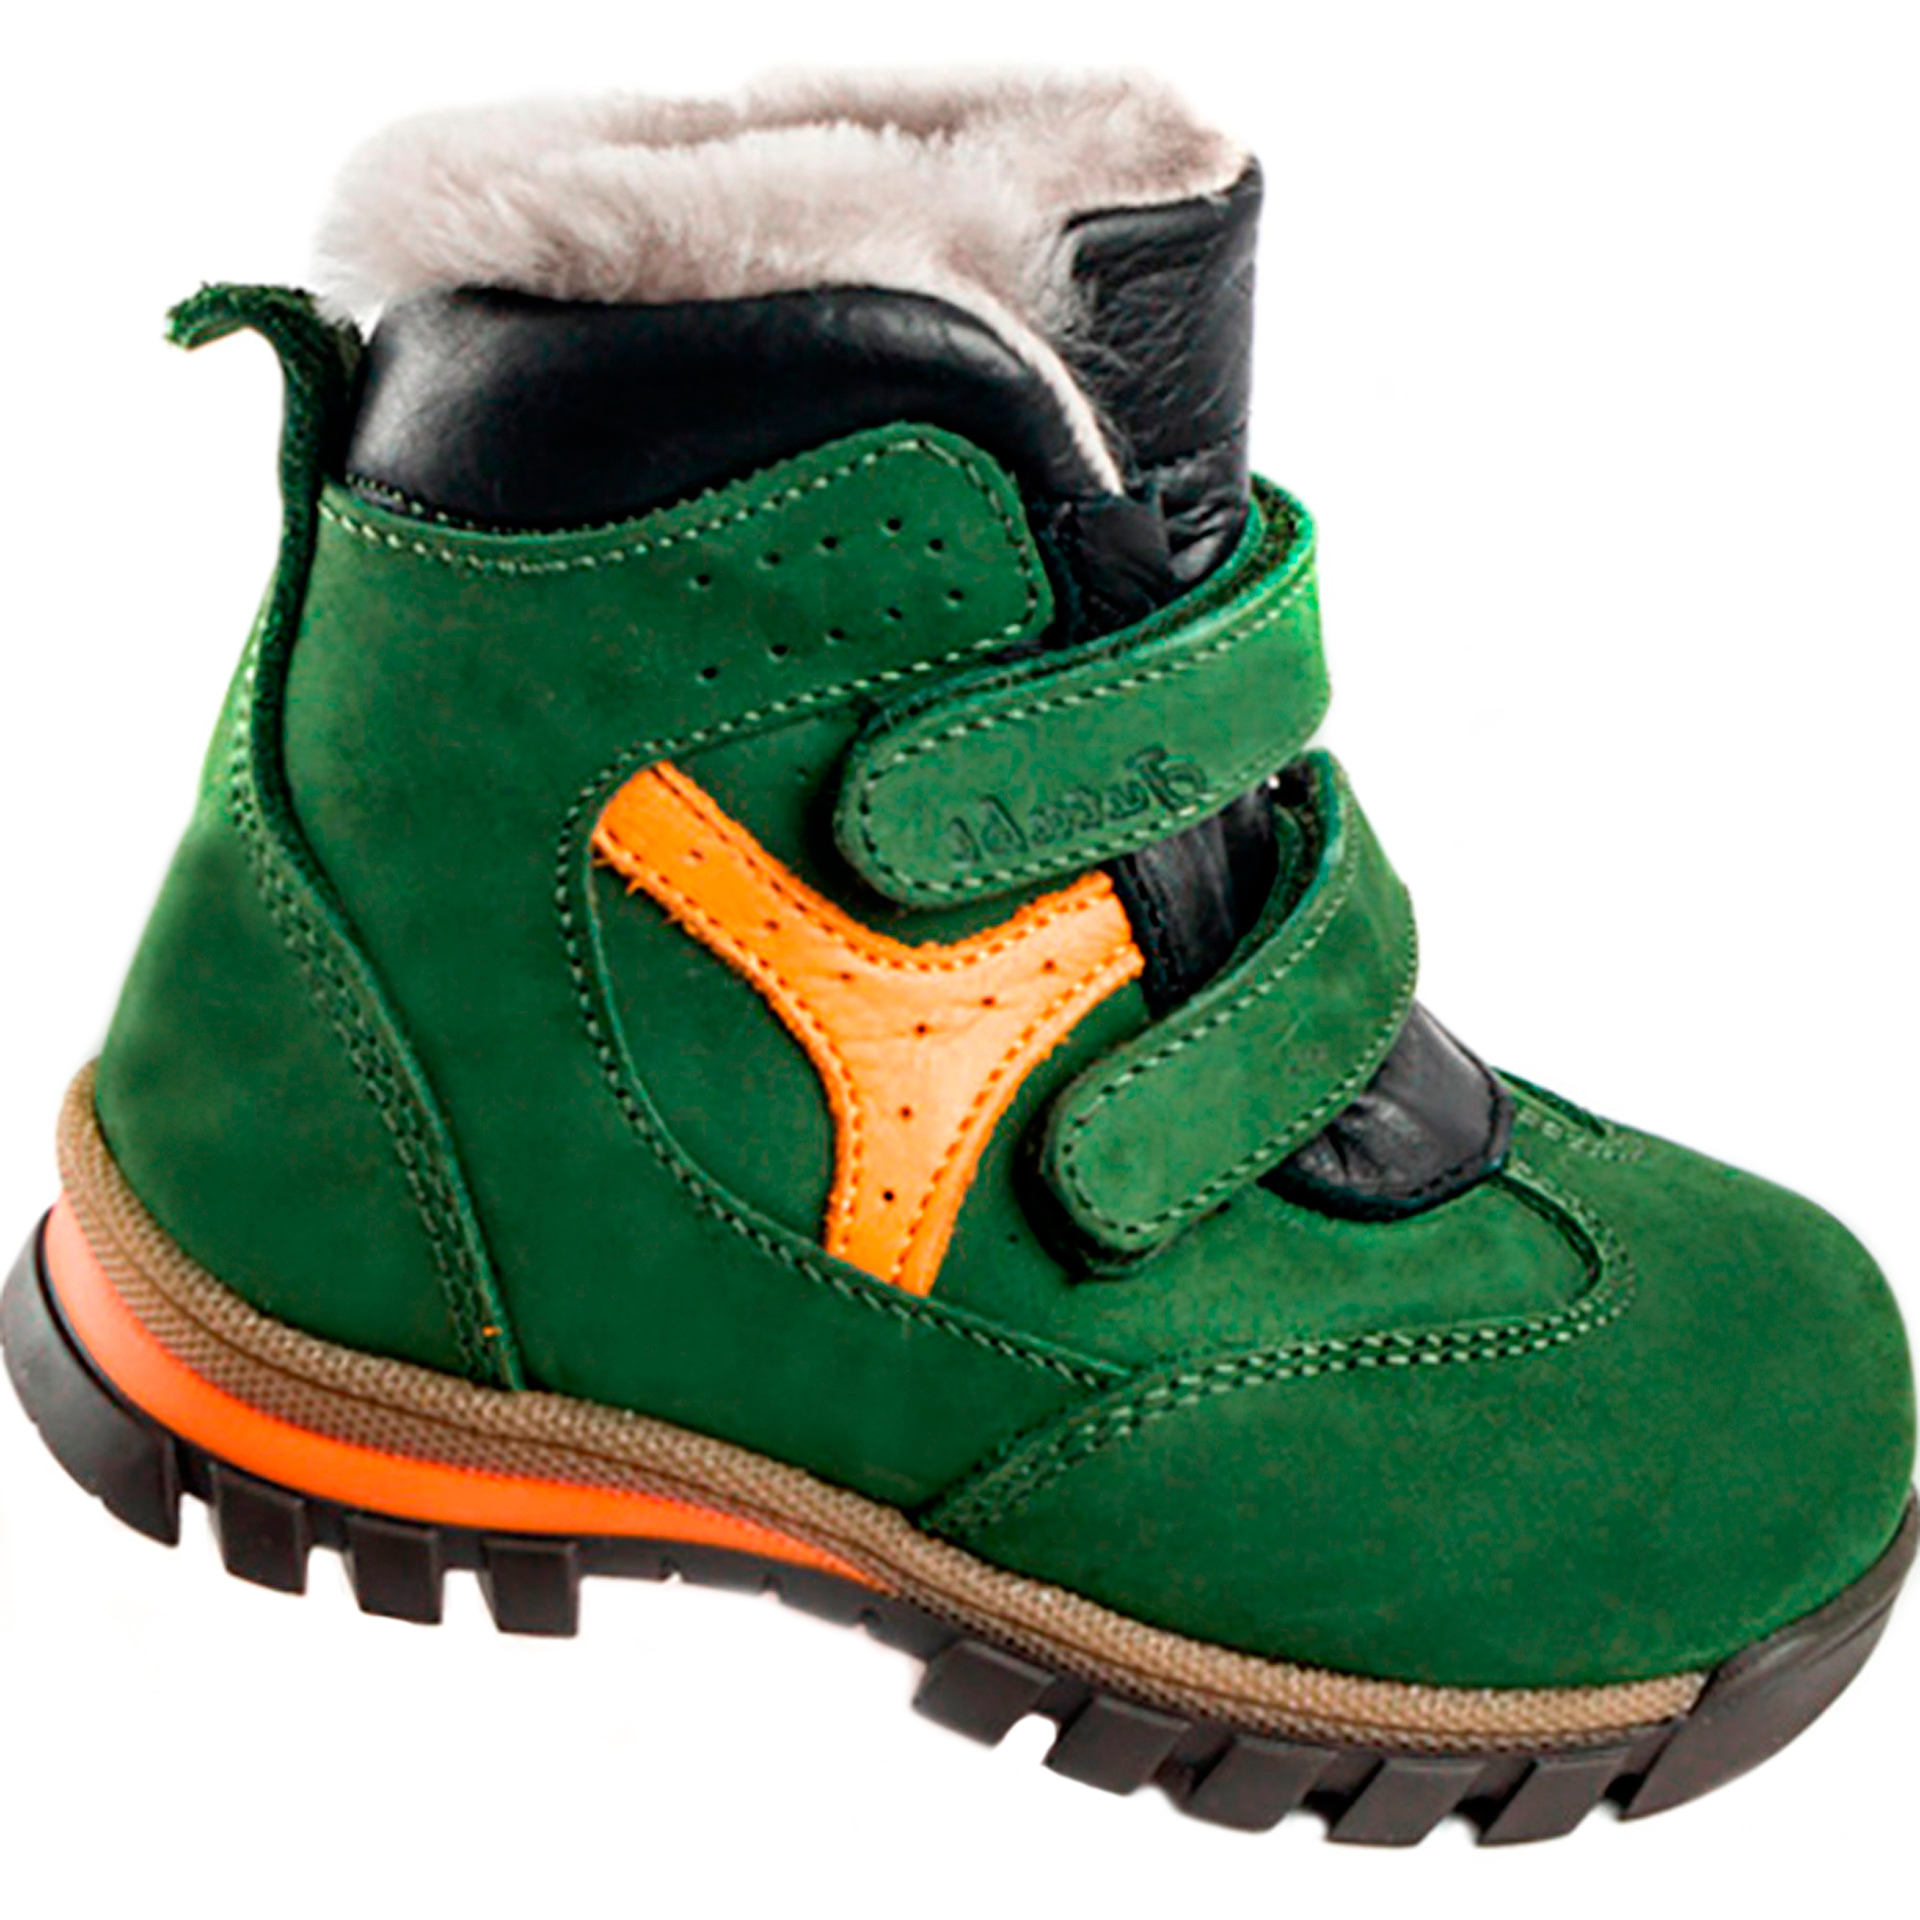 Зимние ботинки детские (1271) материал Нубук, цвет Зеленый  для мальчиков 21-25 размеры – Sole Kids